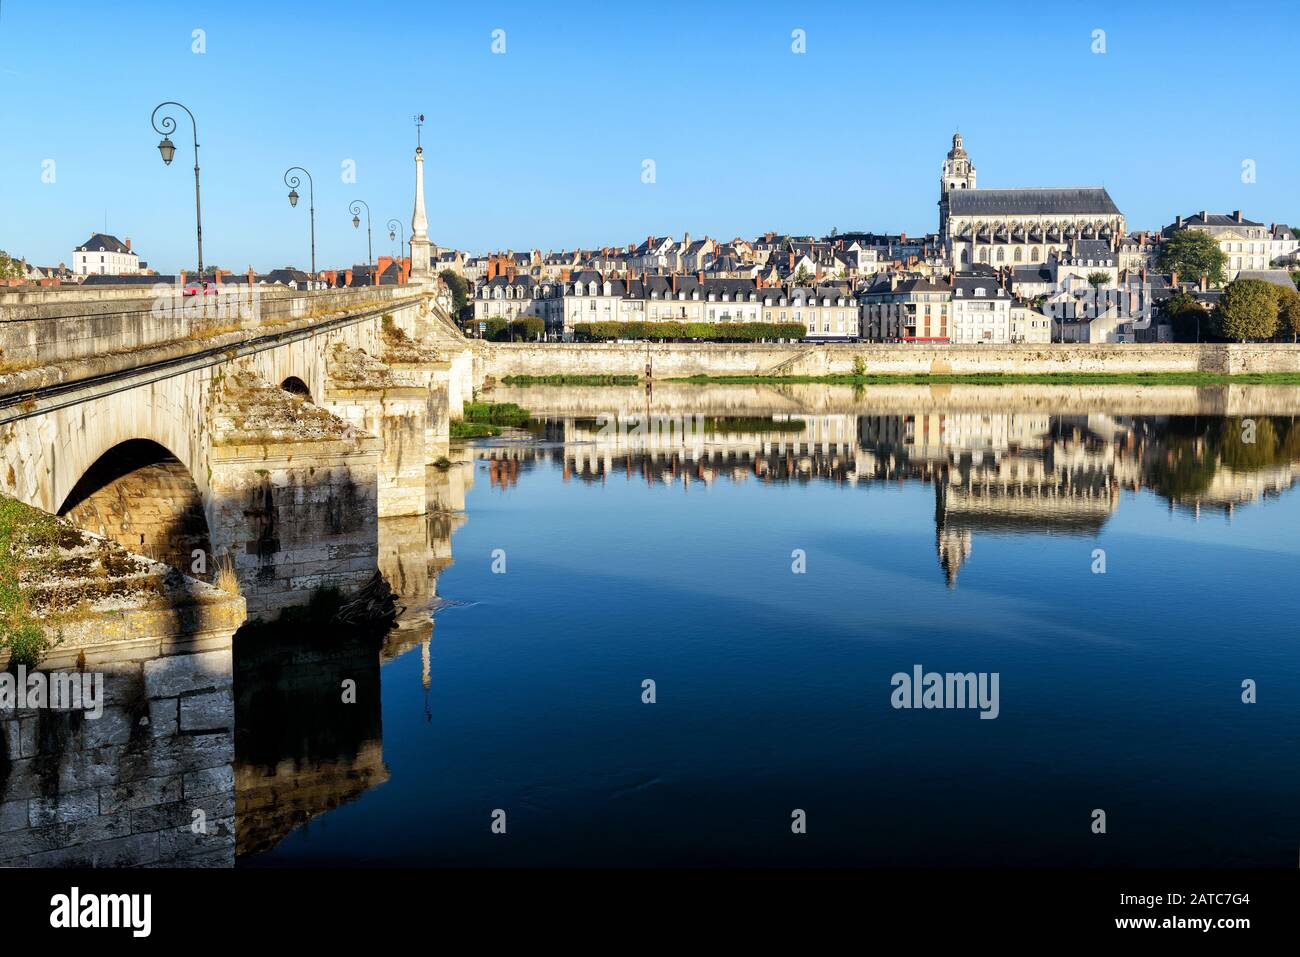 Vieille ville de Blois dans la vallée de la Loire, France Banque D'Images